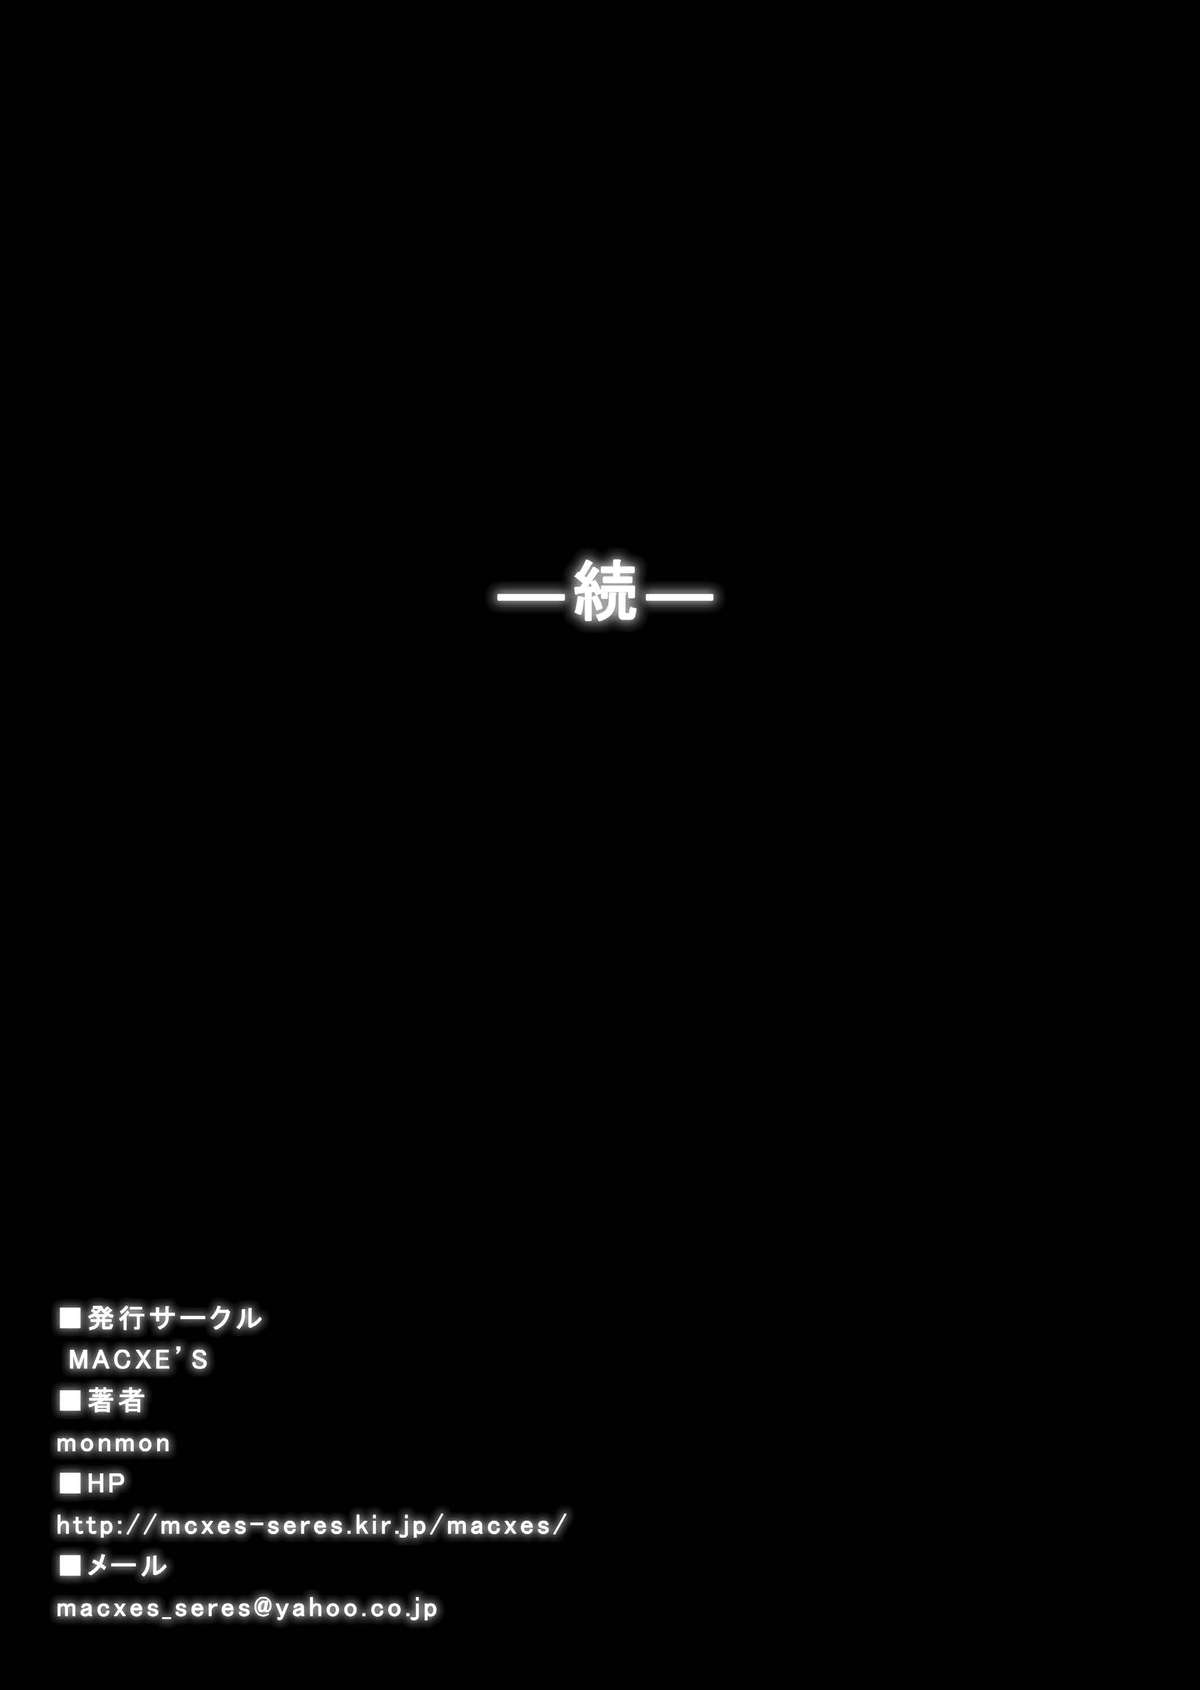 とくぼうせんたいダイナレンジャー〜ヒロインかいらくせんのうけいかく〜Vol.17 / 18